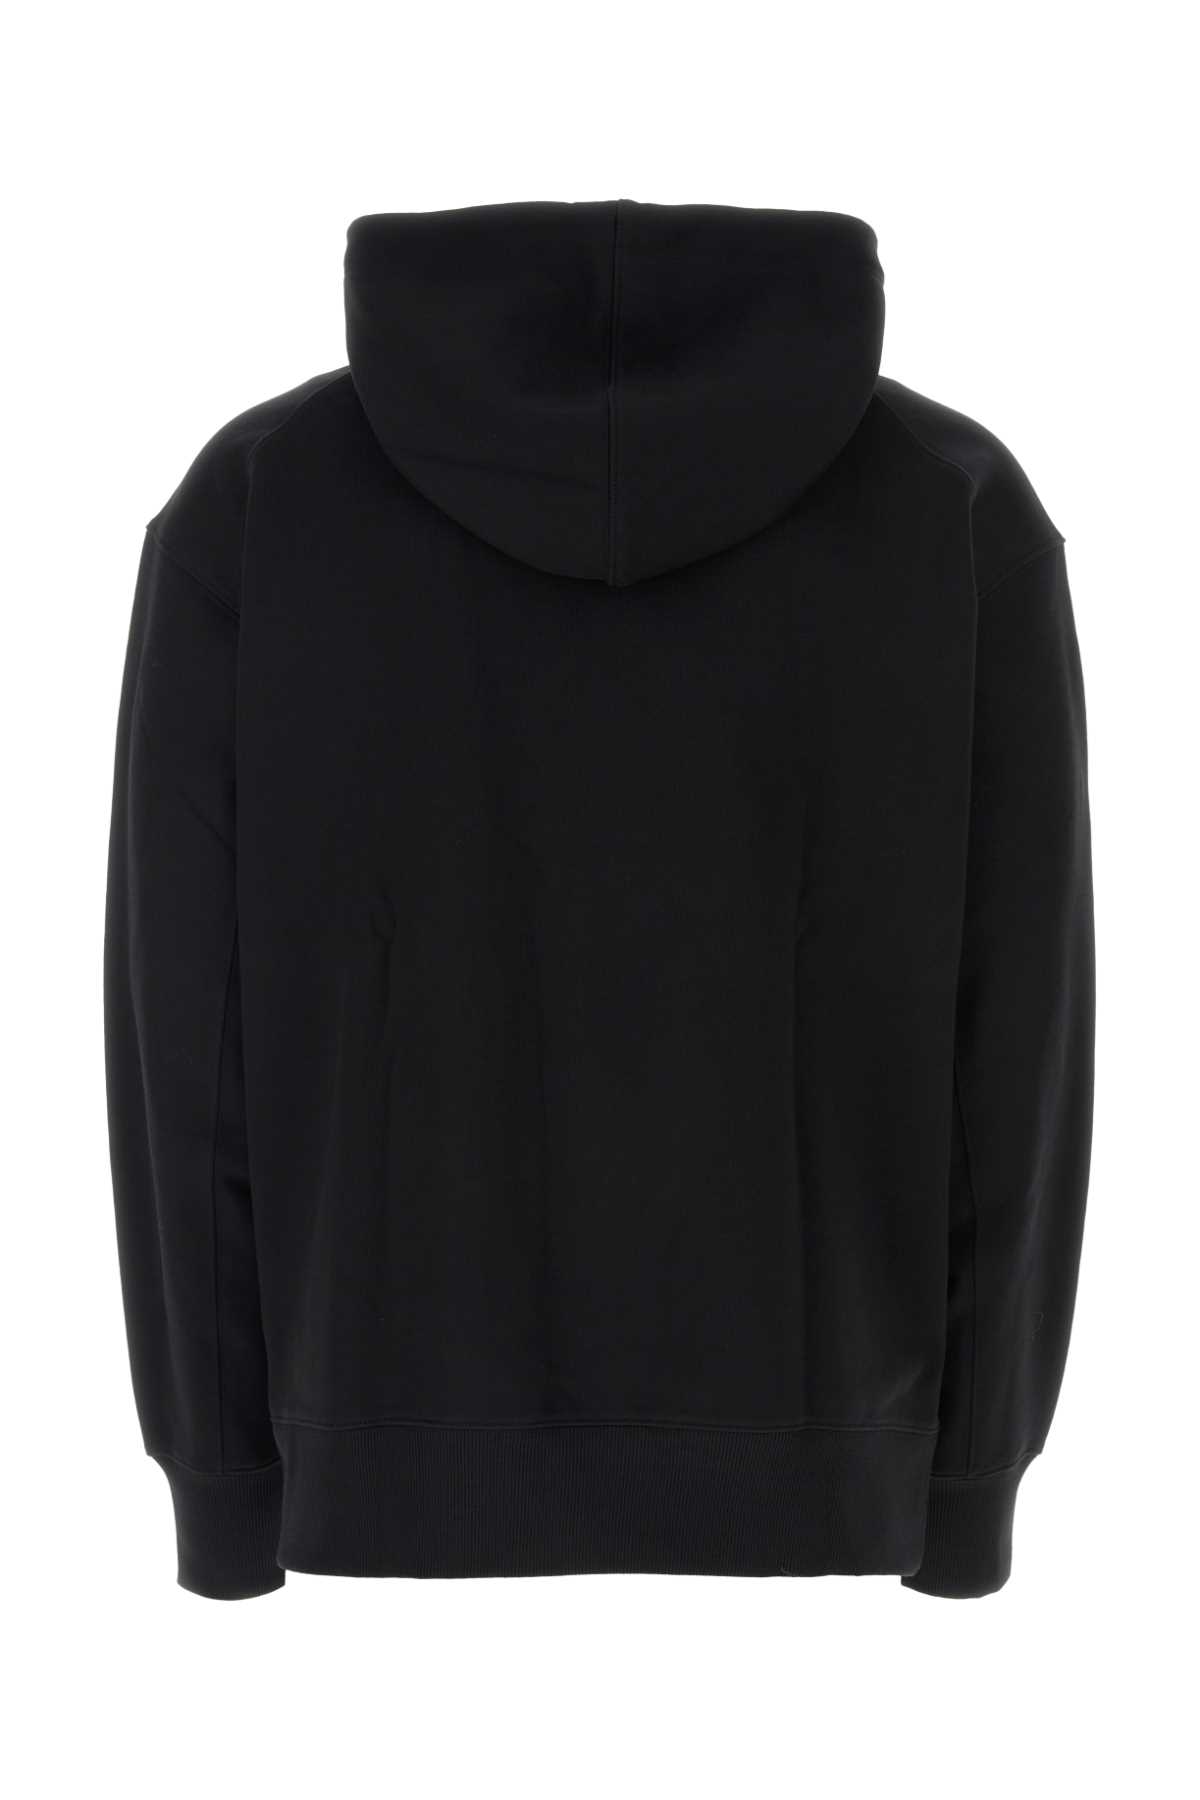 Y-3 Back Cotton Sweatshirt In Black